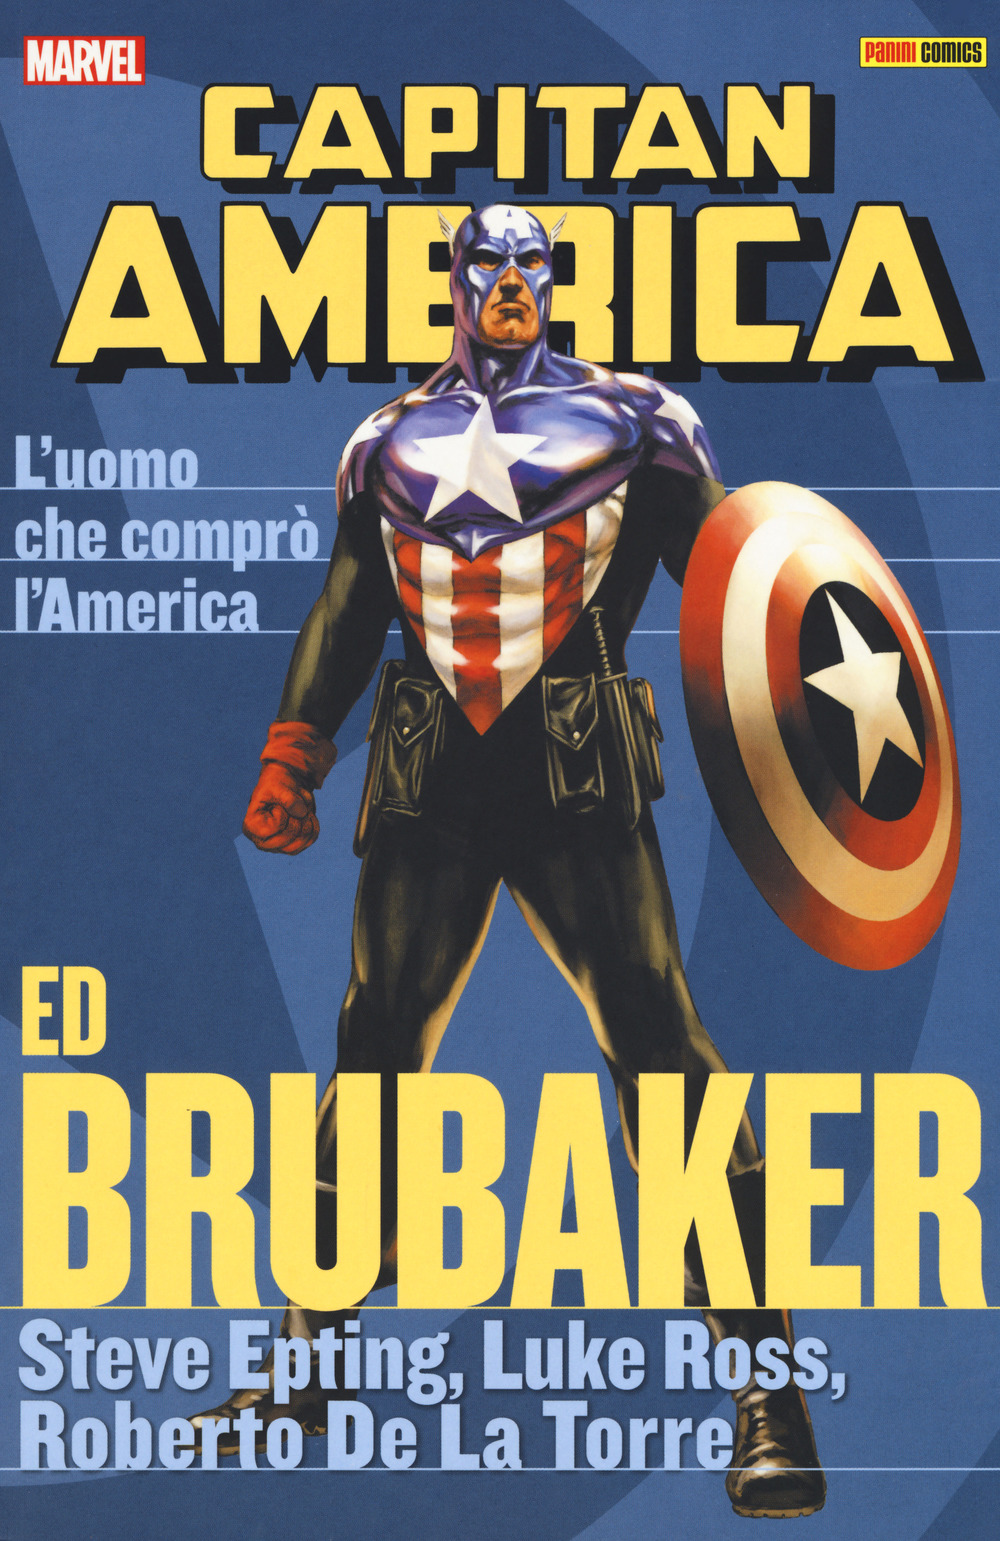 L'uomo che comprò l'America. Capitan America. Ed Brubaker collection. Vol. 8